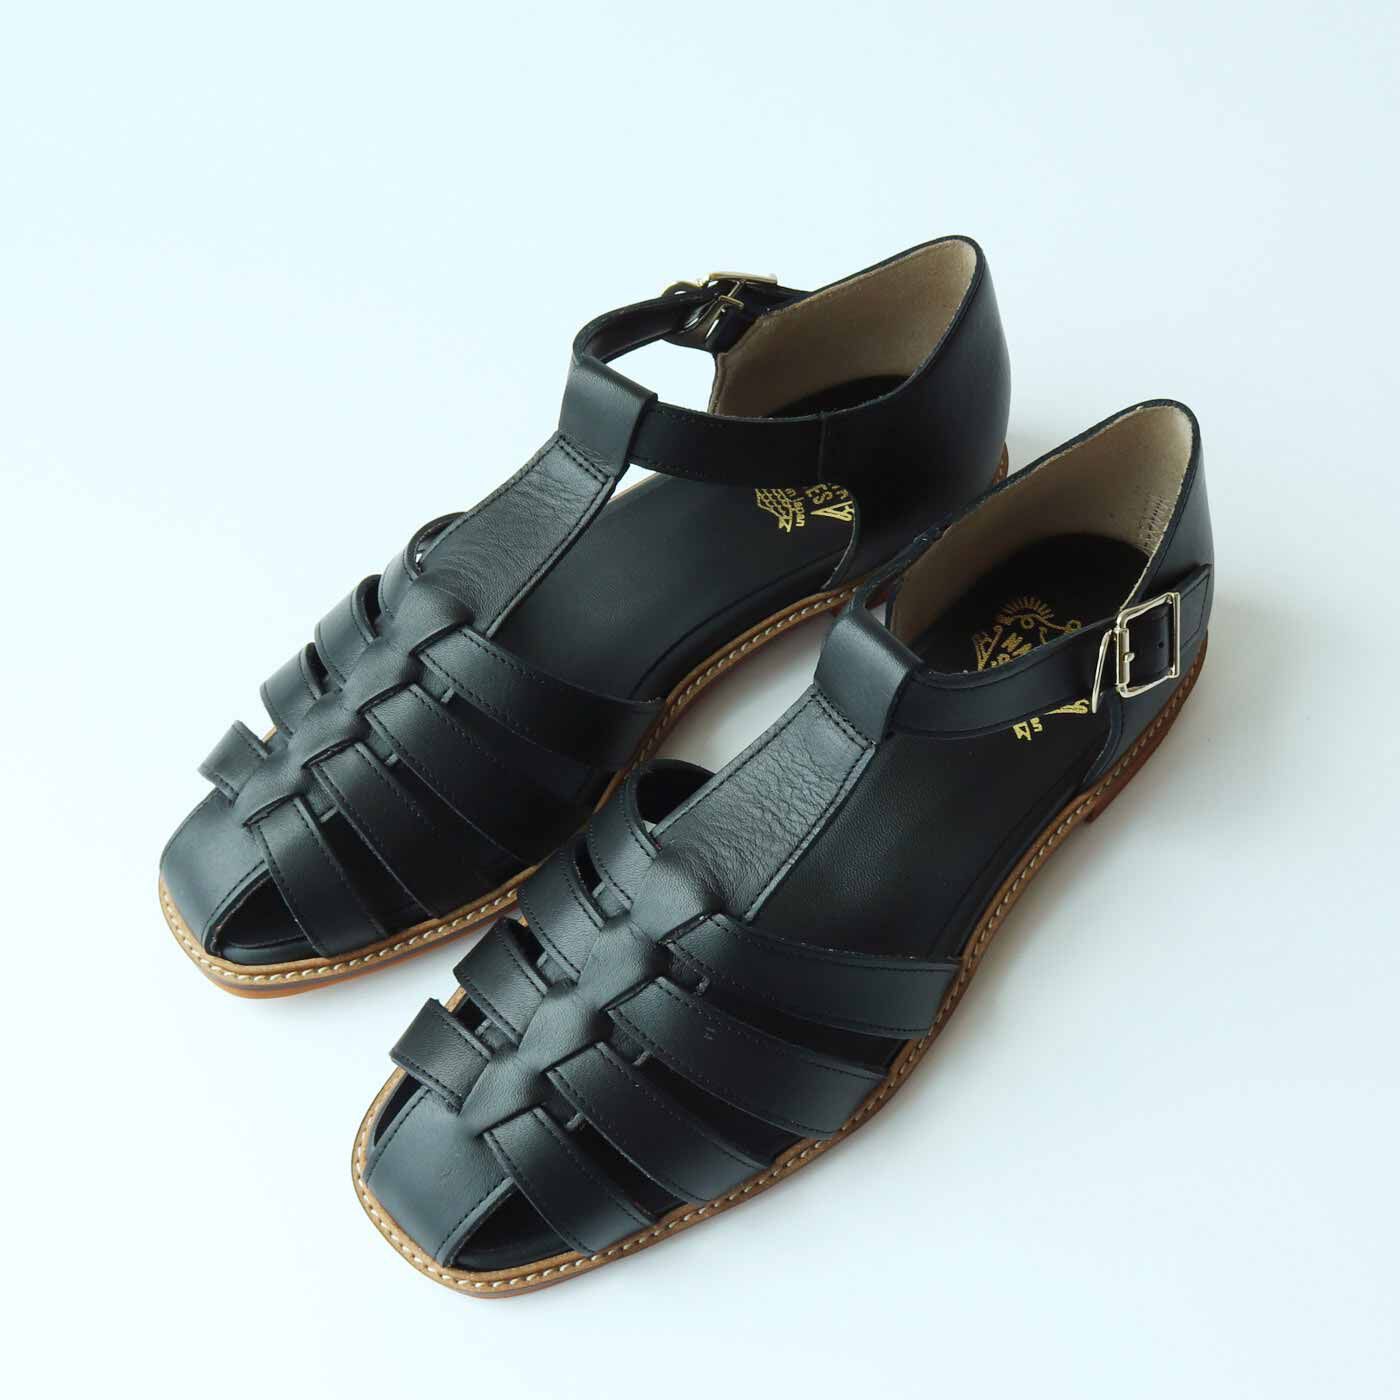 ＆Stories|靴デザイナーの理想で仕上げた 職人本革のフィッシャーマンシューズ〈ブラック〉|サイズも10サイズ展開で21.5〜26cmと充実しています。